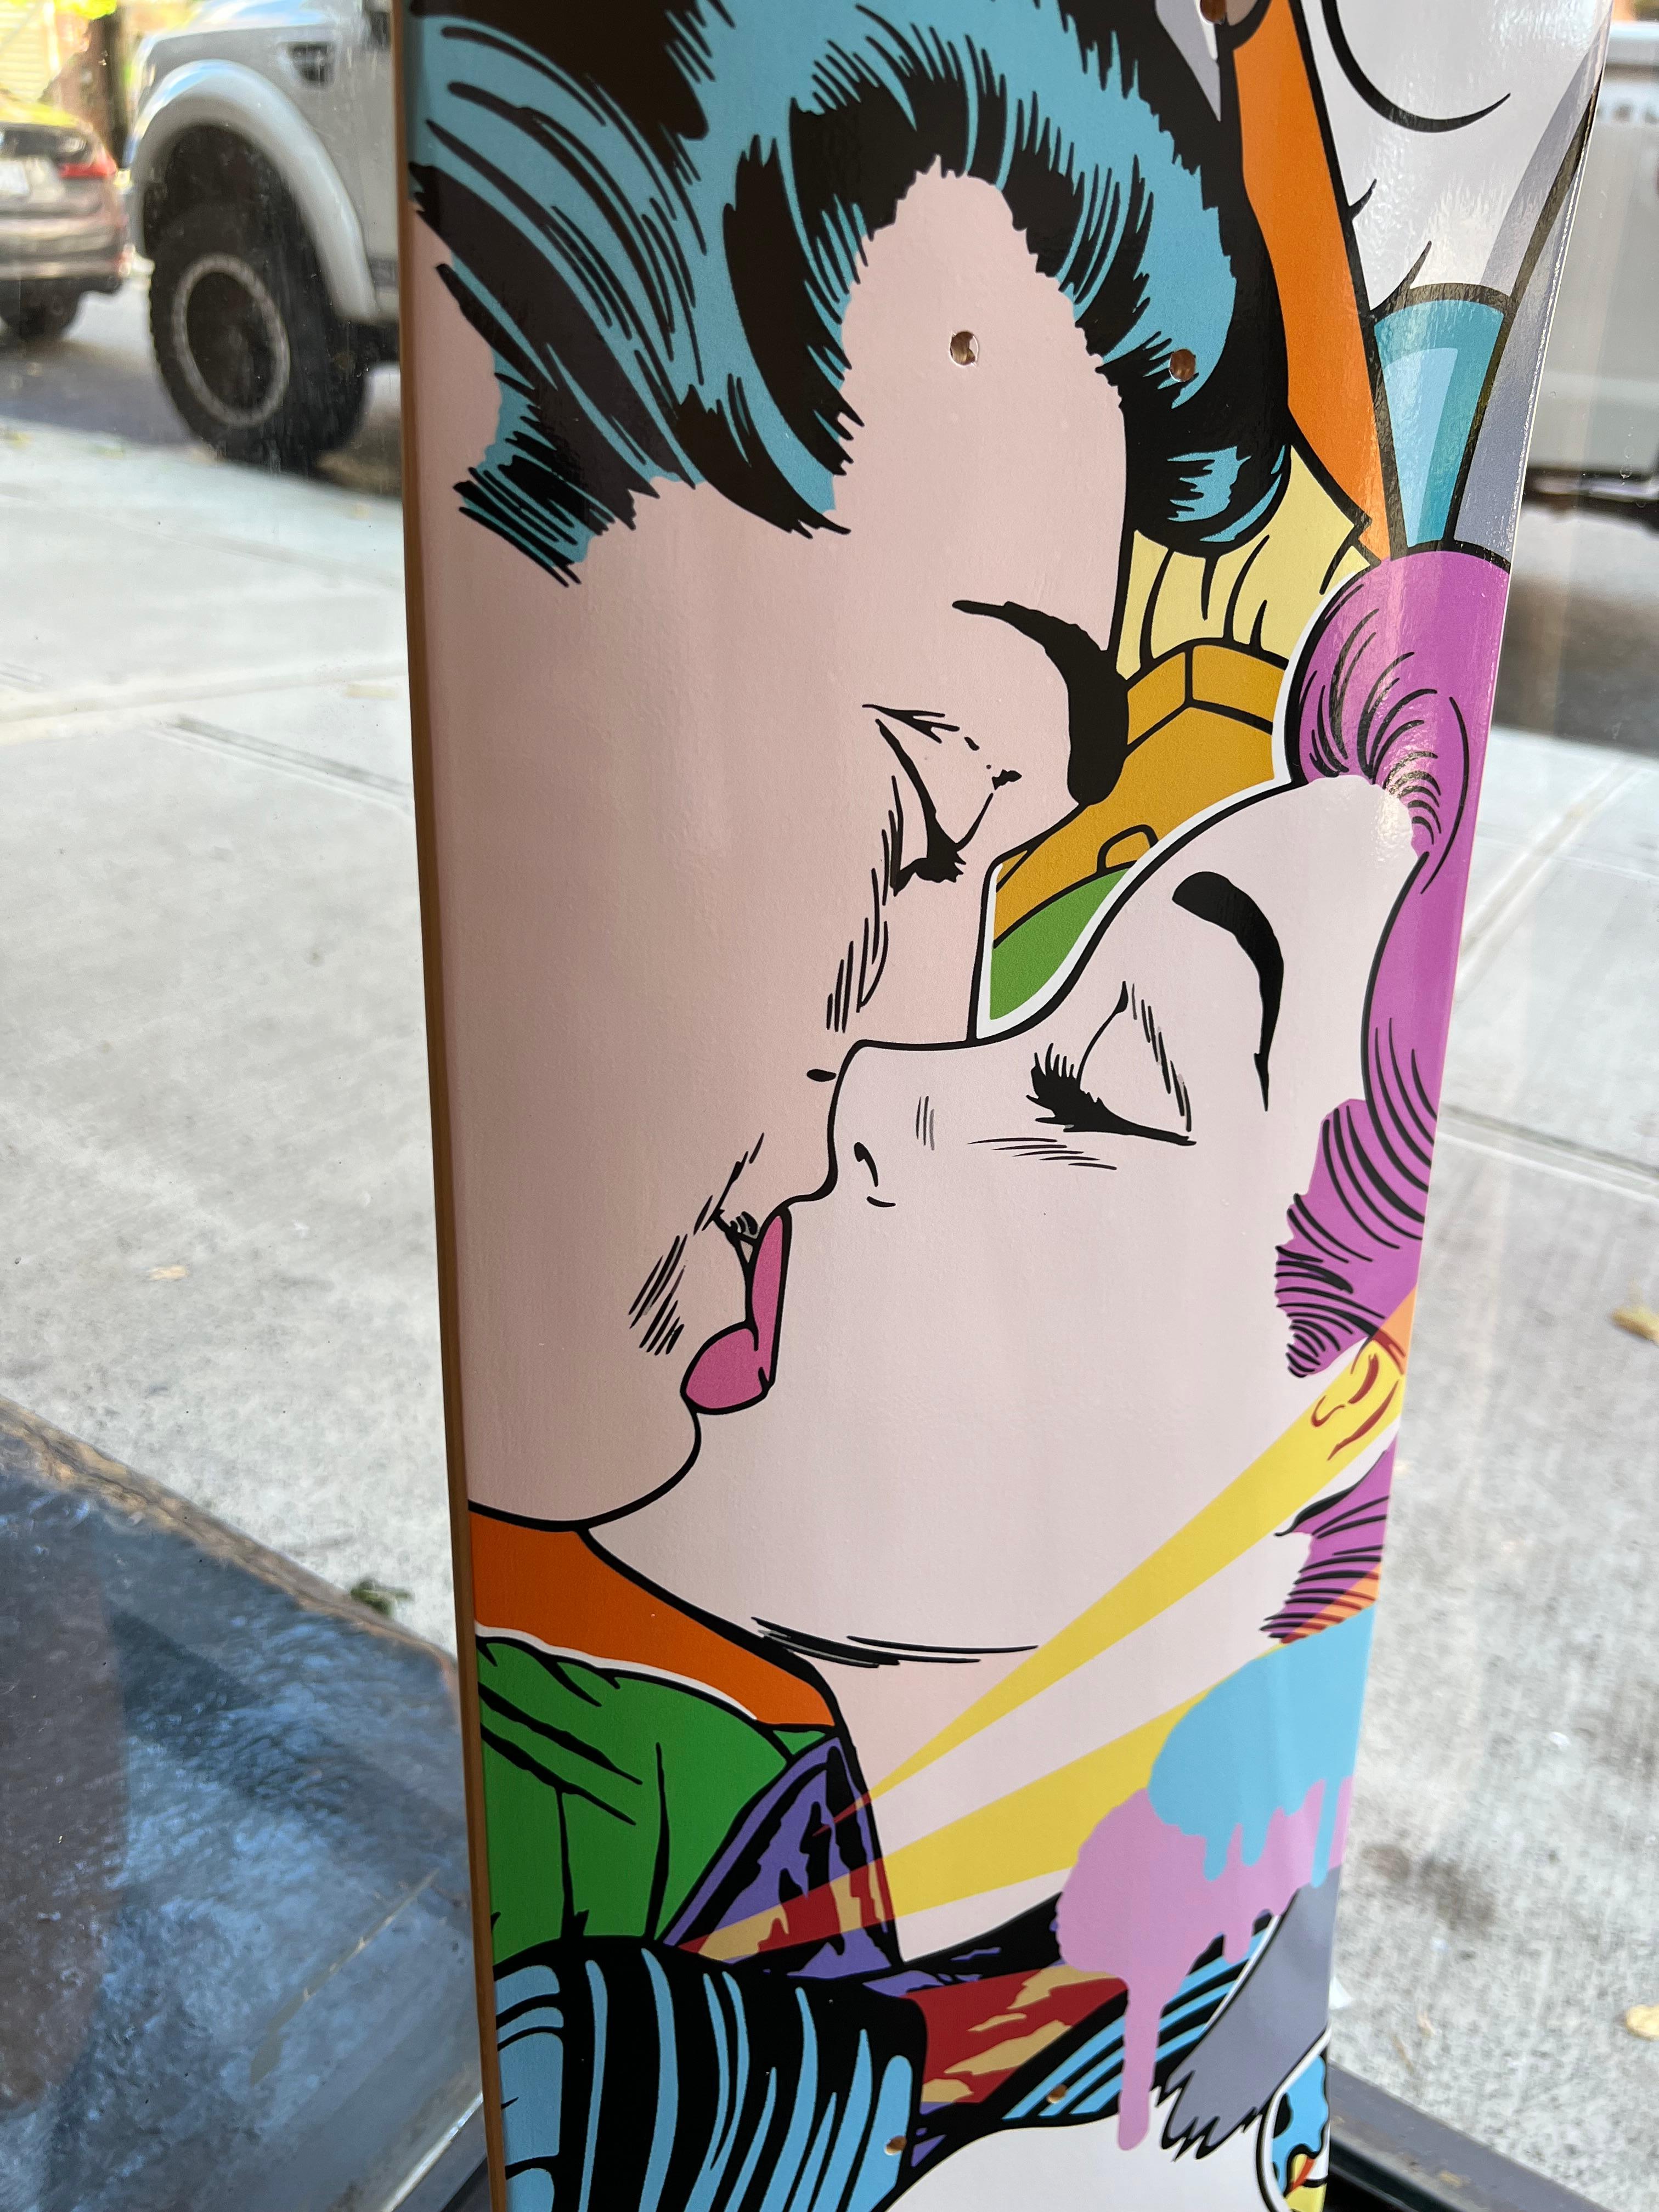 Impression Pop Art « Skatedeck » de l'artiste de street art Bustart sur skatedeck 2